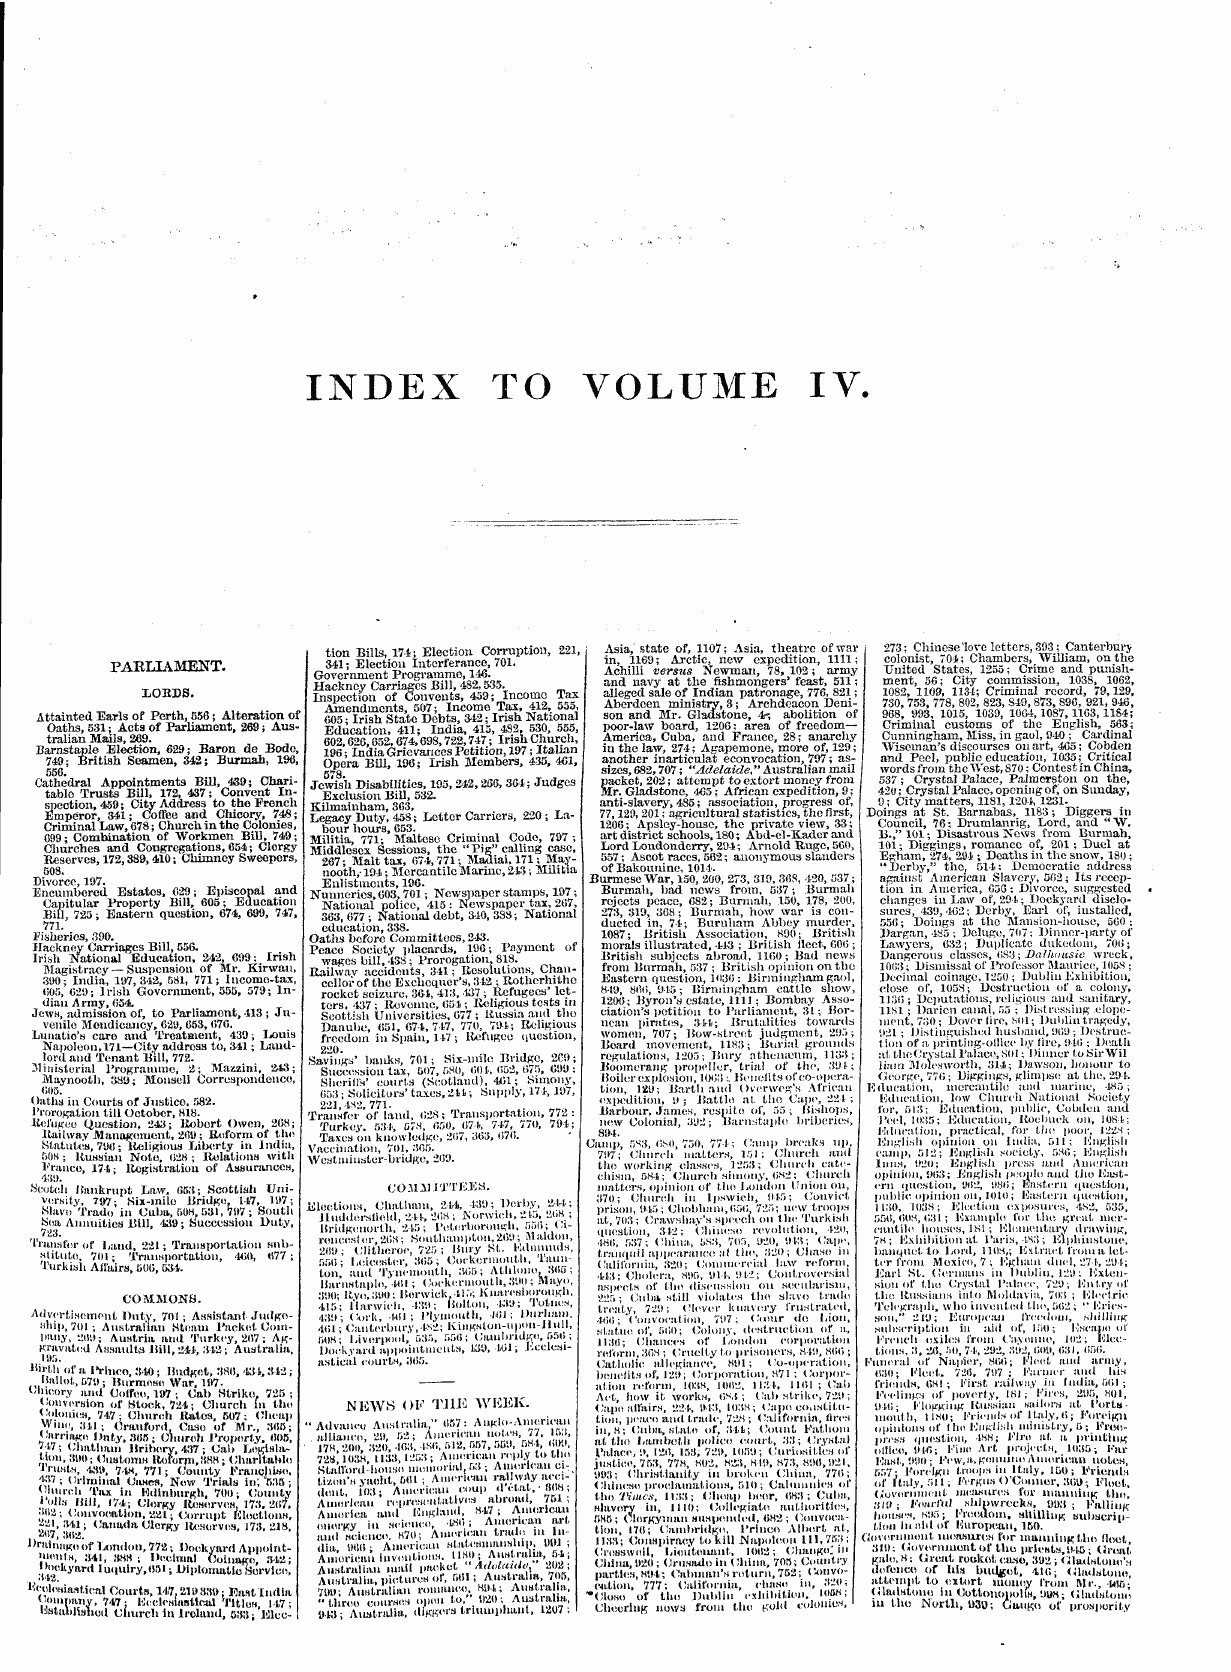 Leader (1850-1860): jS F Y, 1st edition, Front matter - » Index To Volume Iv.